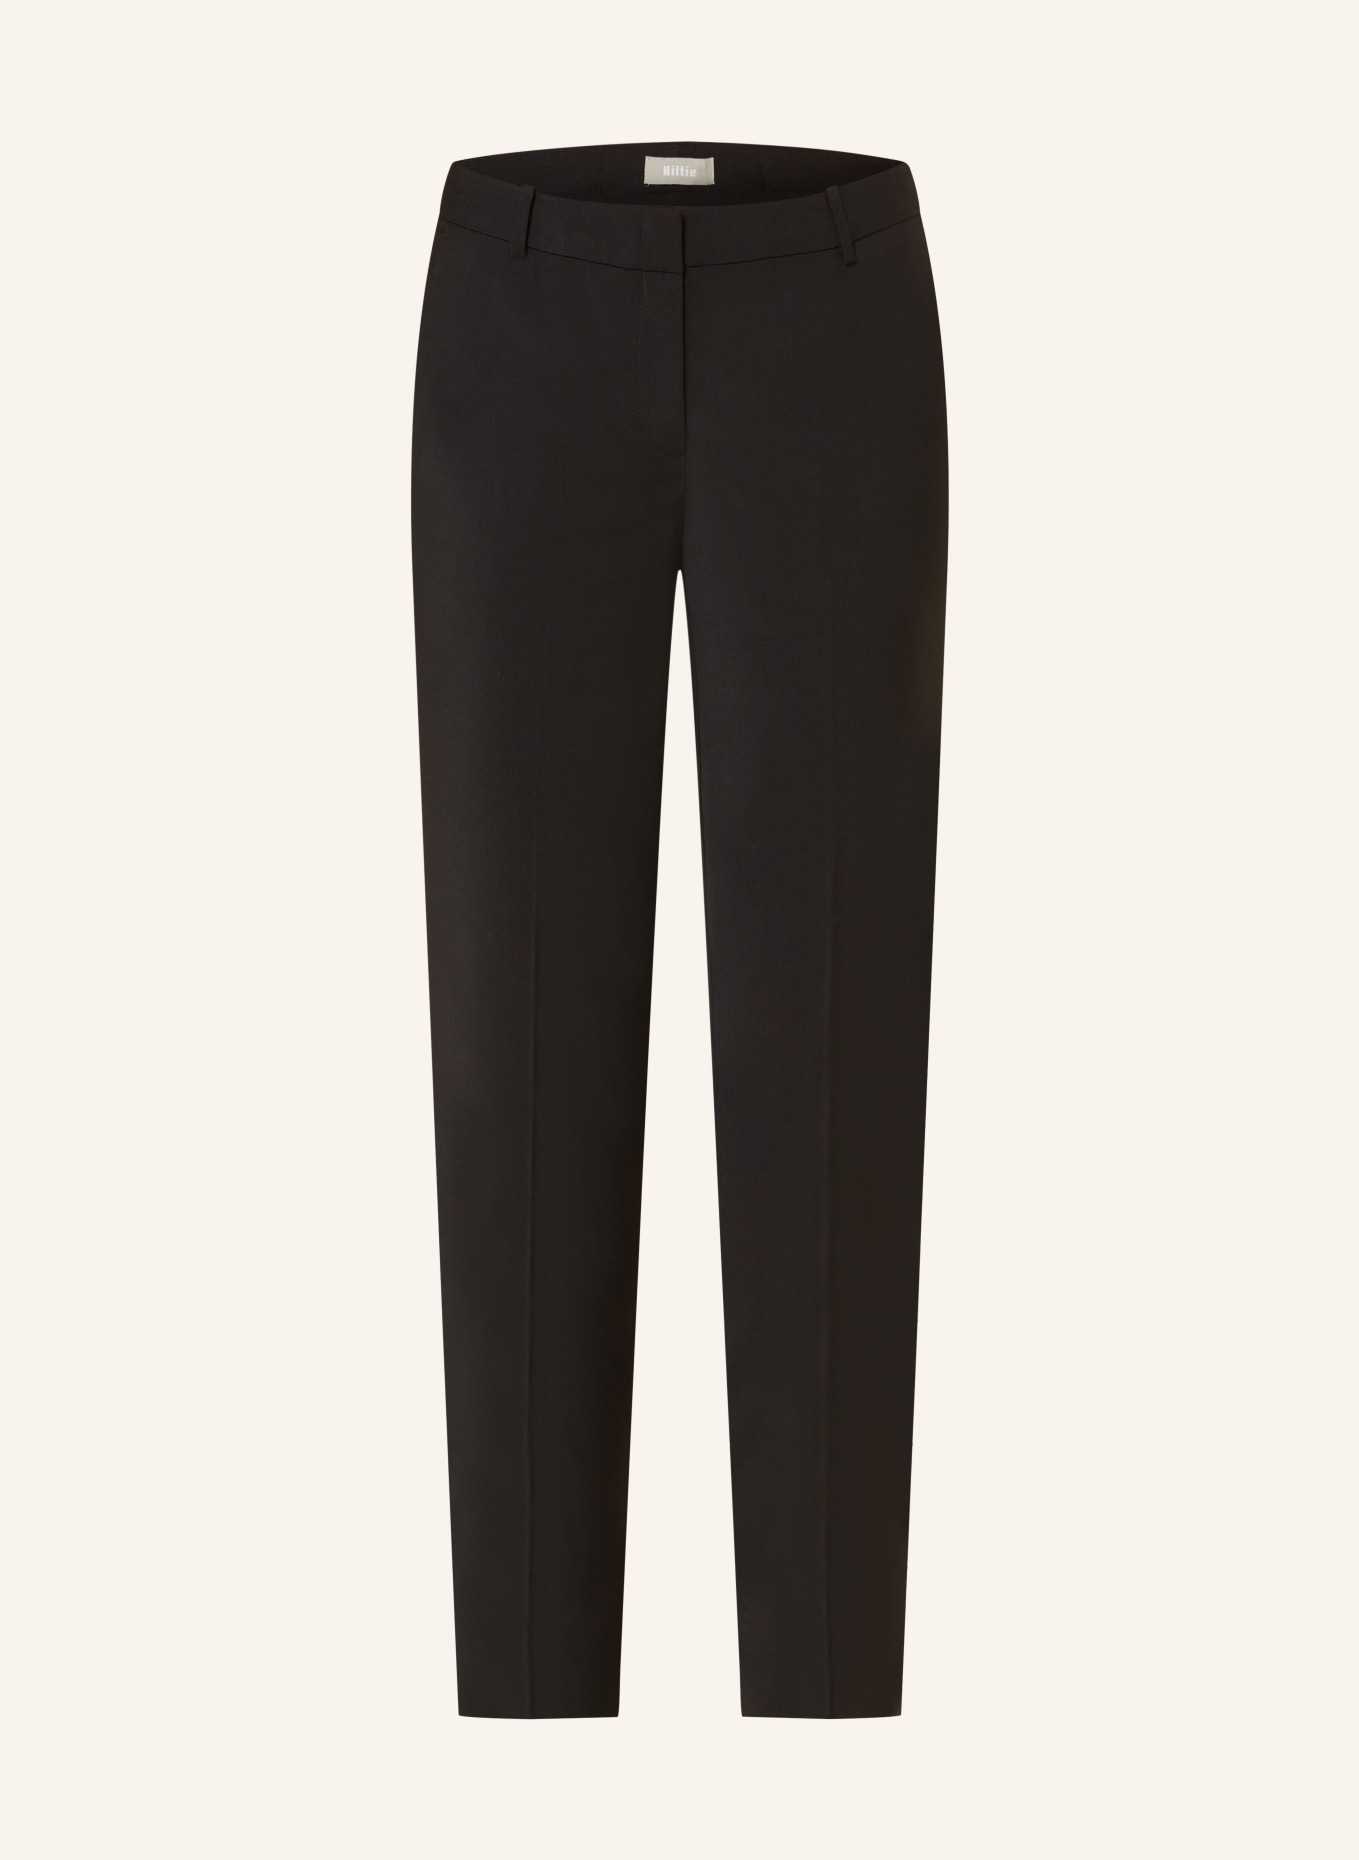 Kiltie Trousers, Color: BLACK (Image 1)